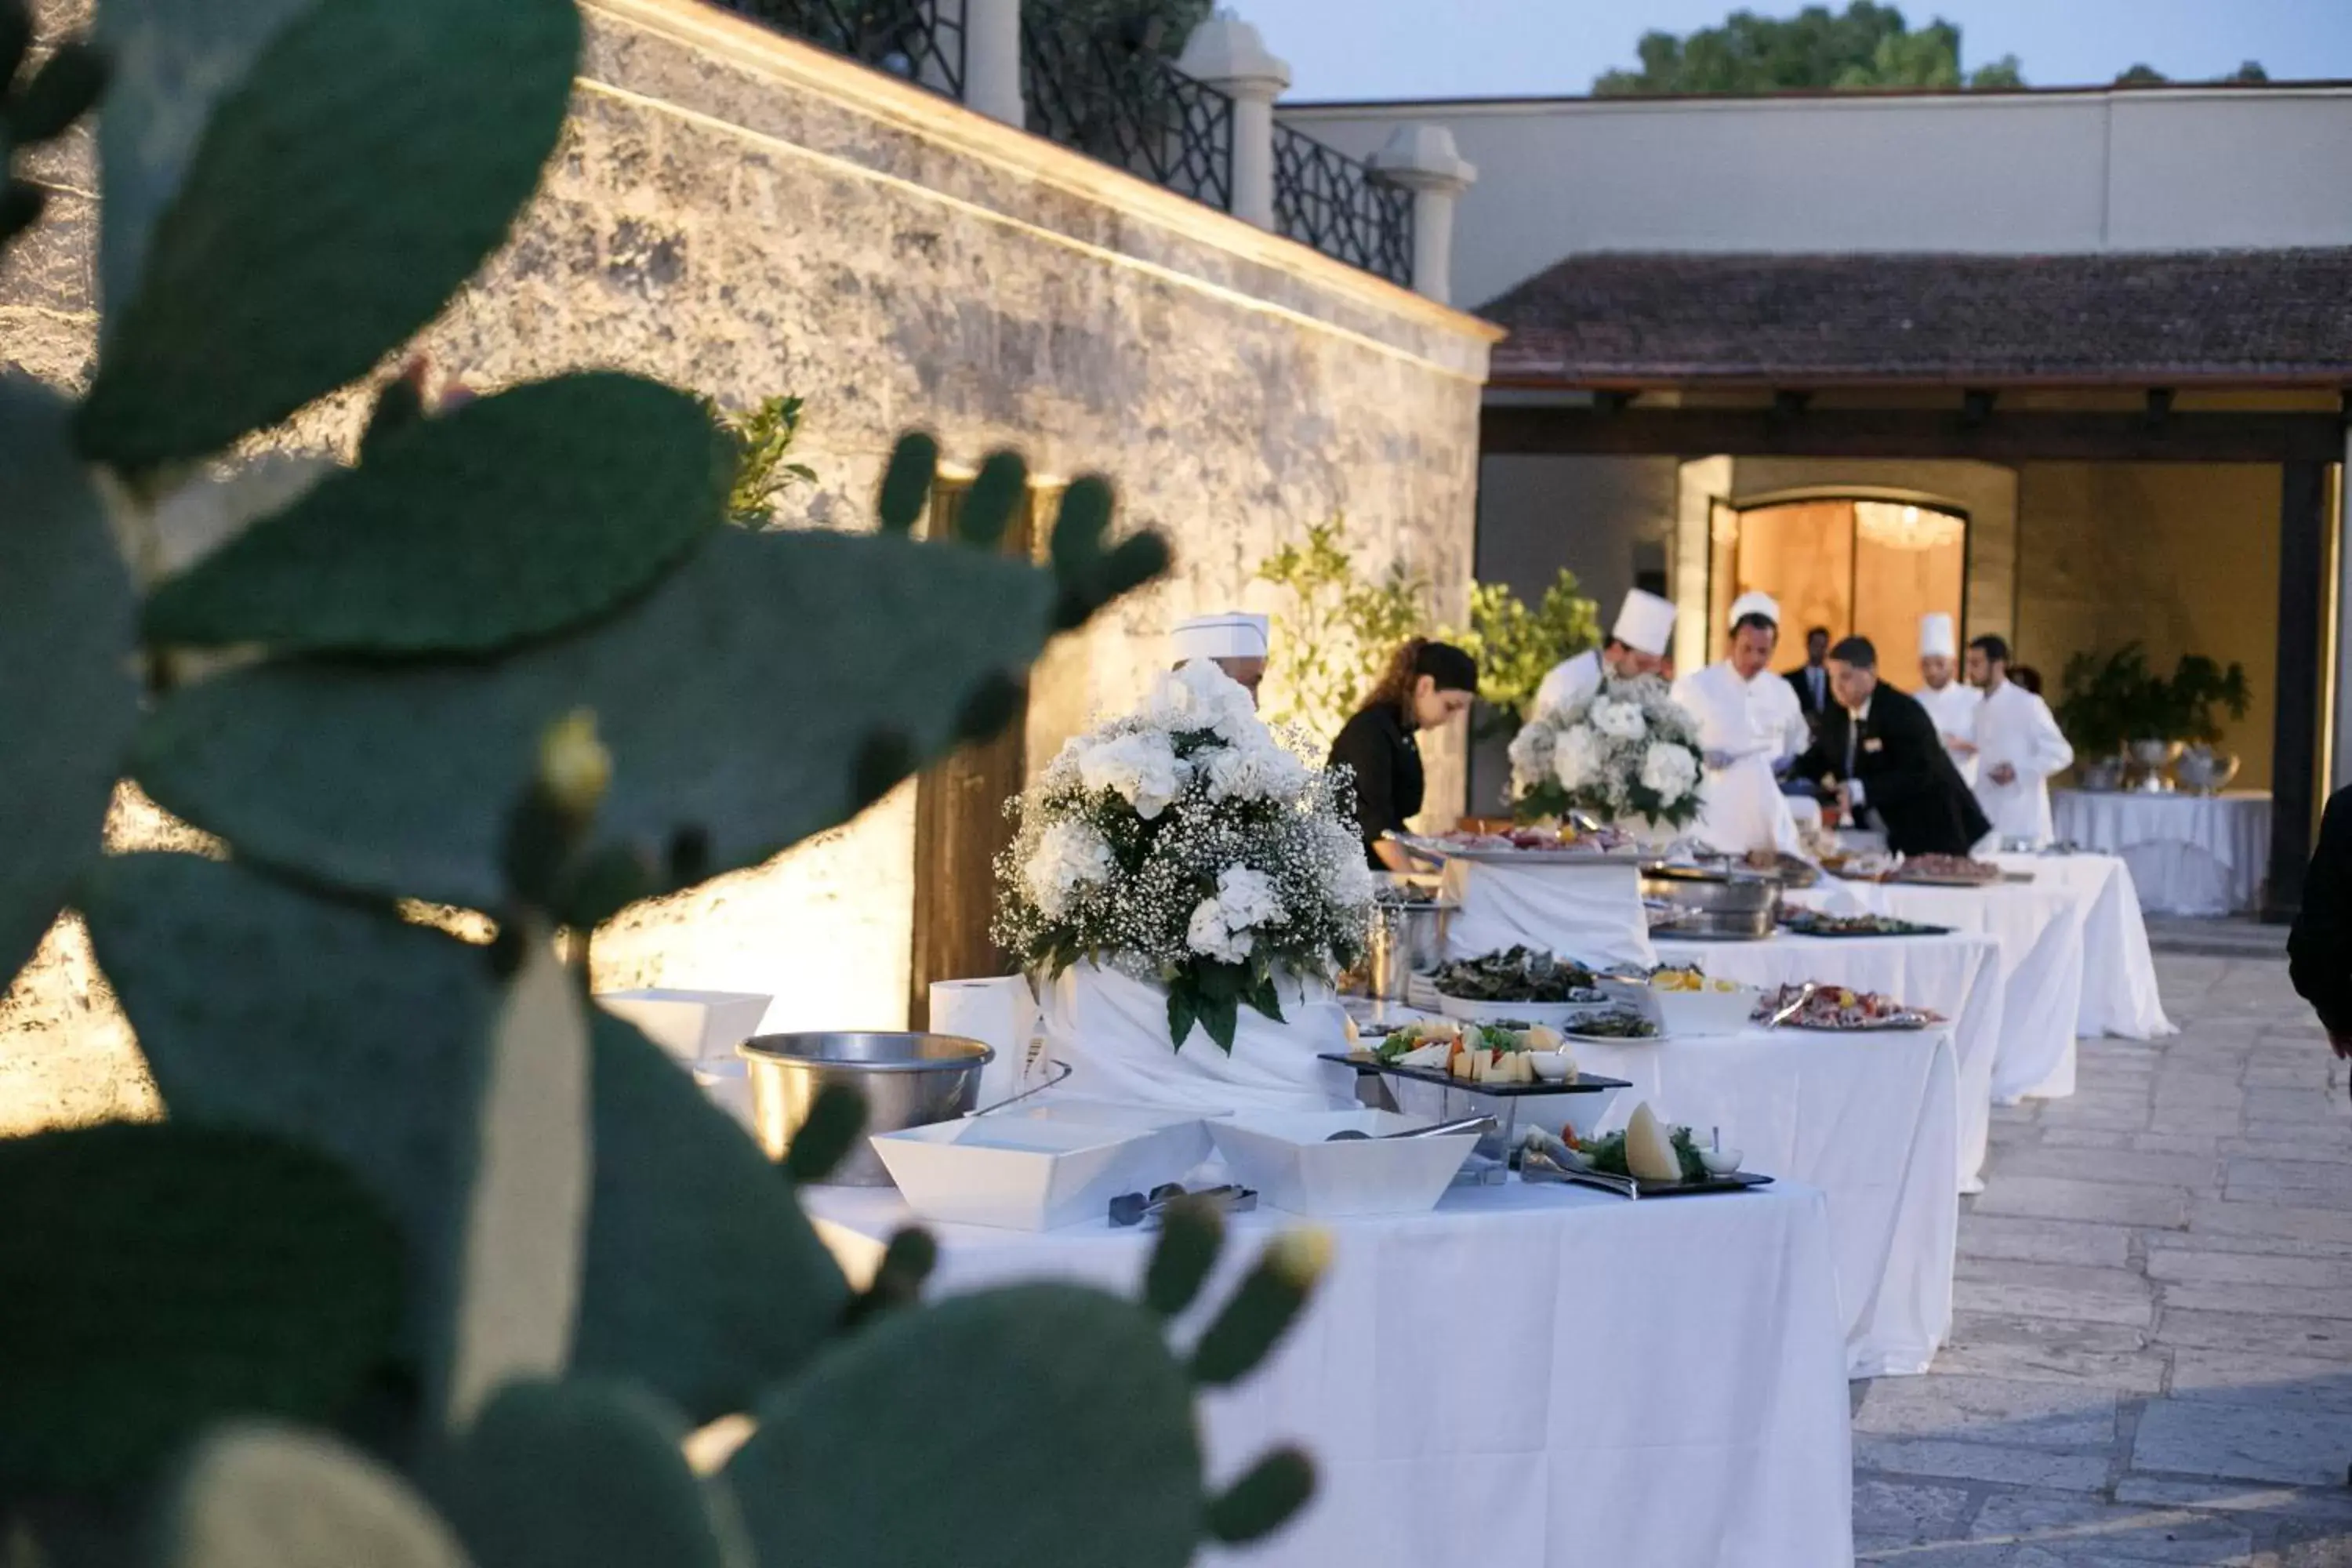 Banquet/Function facilities in Mercure Villa Romanazzi Carducci Bari